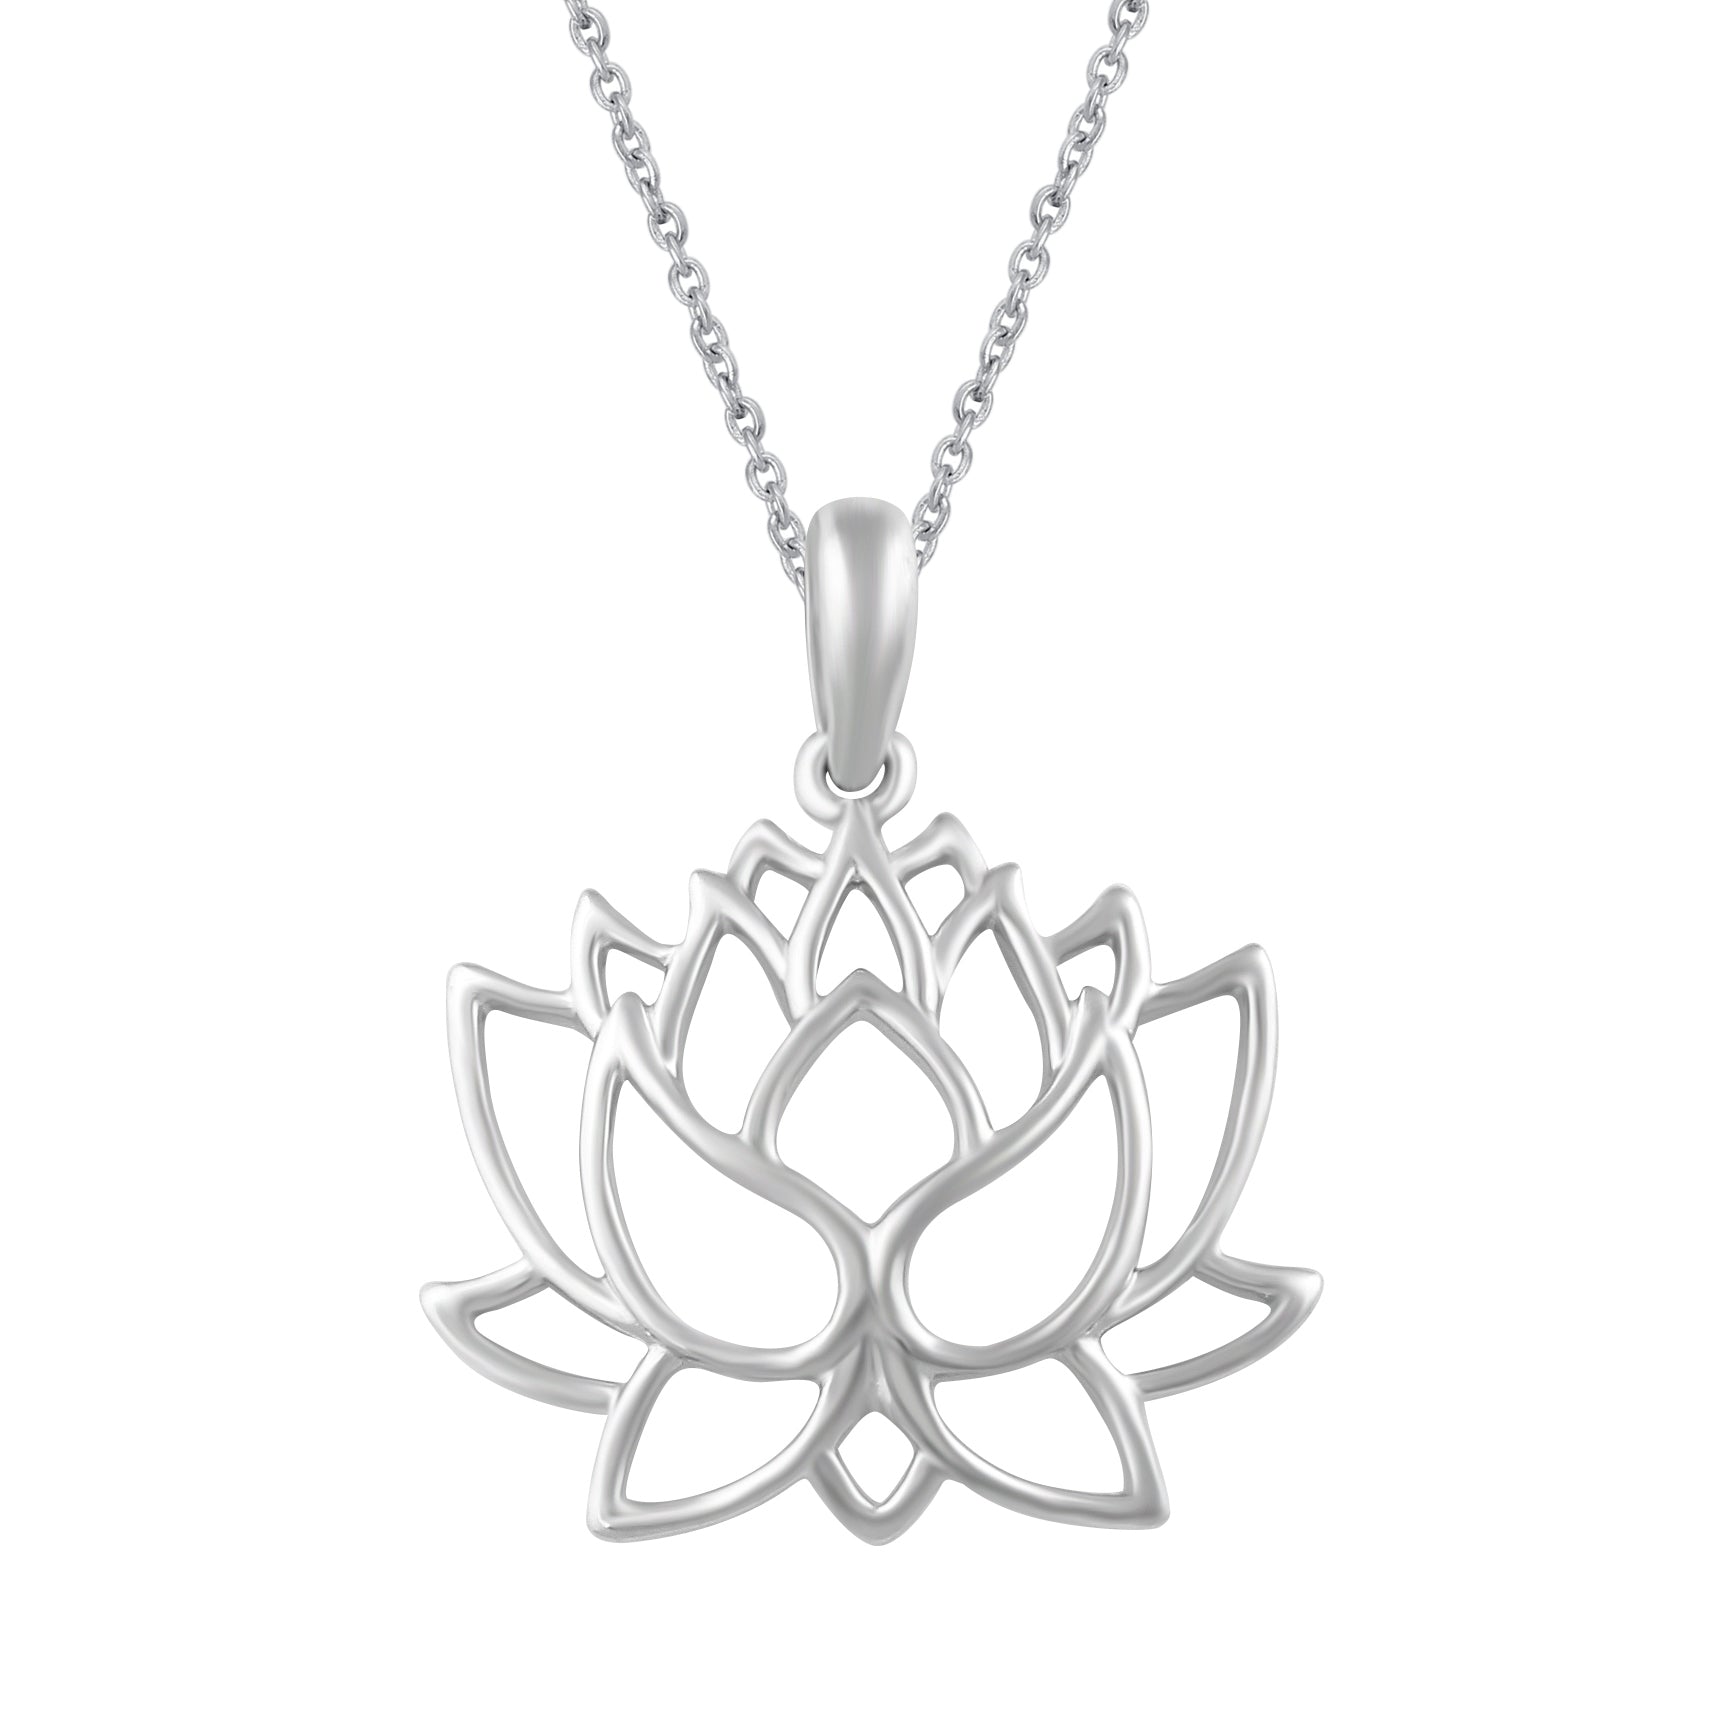 Locket Pendant STERLING SILVER 925 Lotus Flower Floral Design